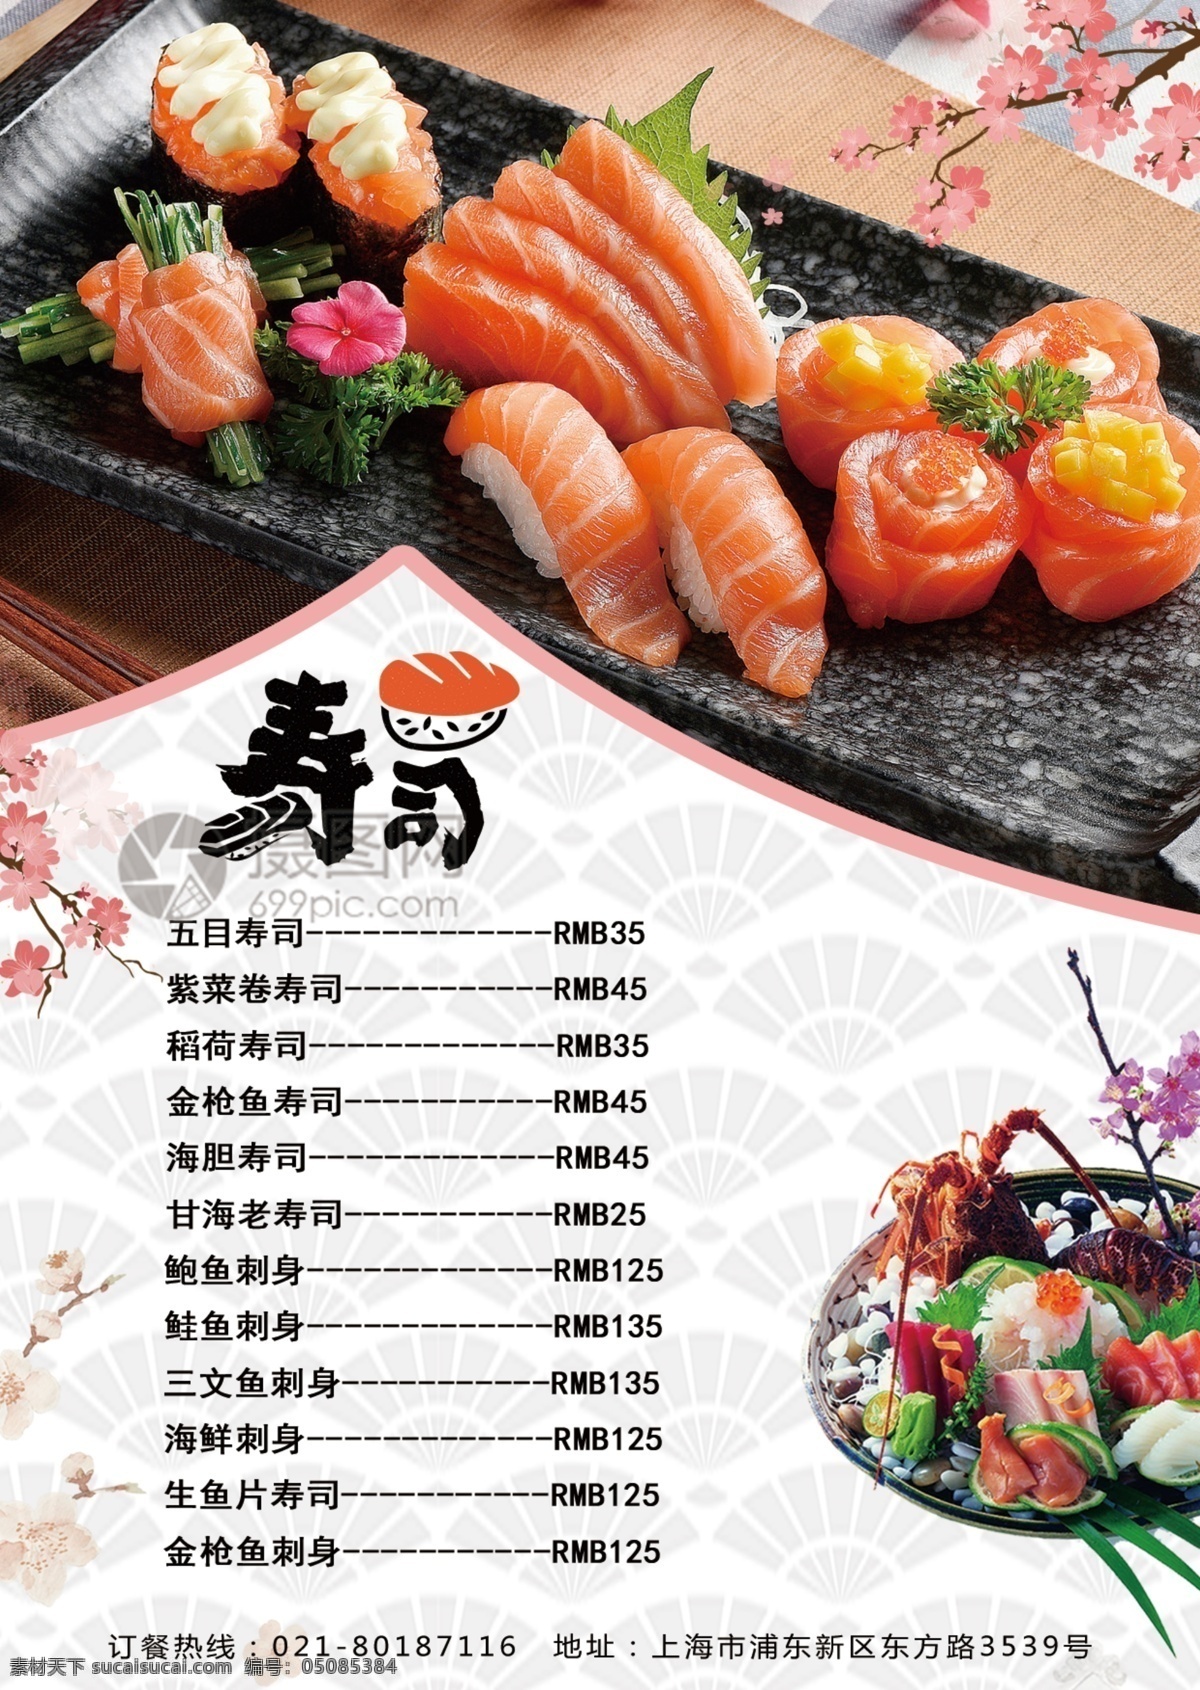 日 料 美食 宣传单 日本料理 刺身宣传单 寿司 日料 日本美食 餐饮宣传页 餐饮